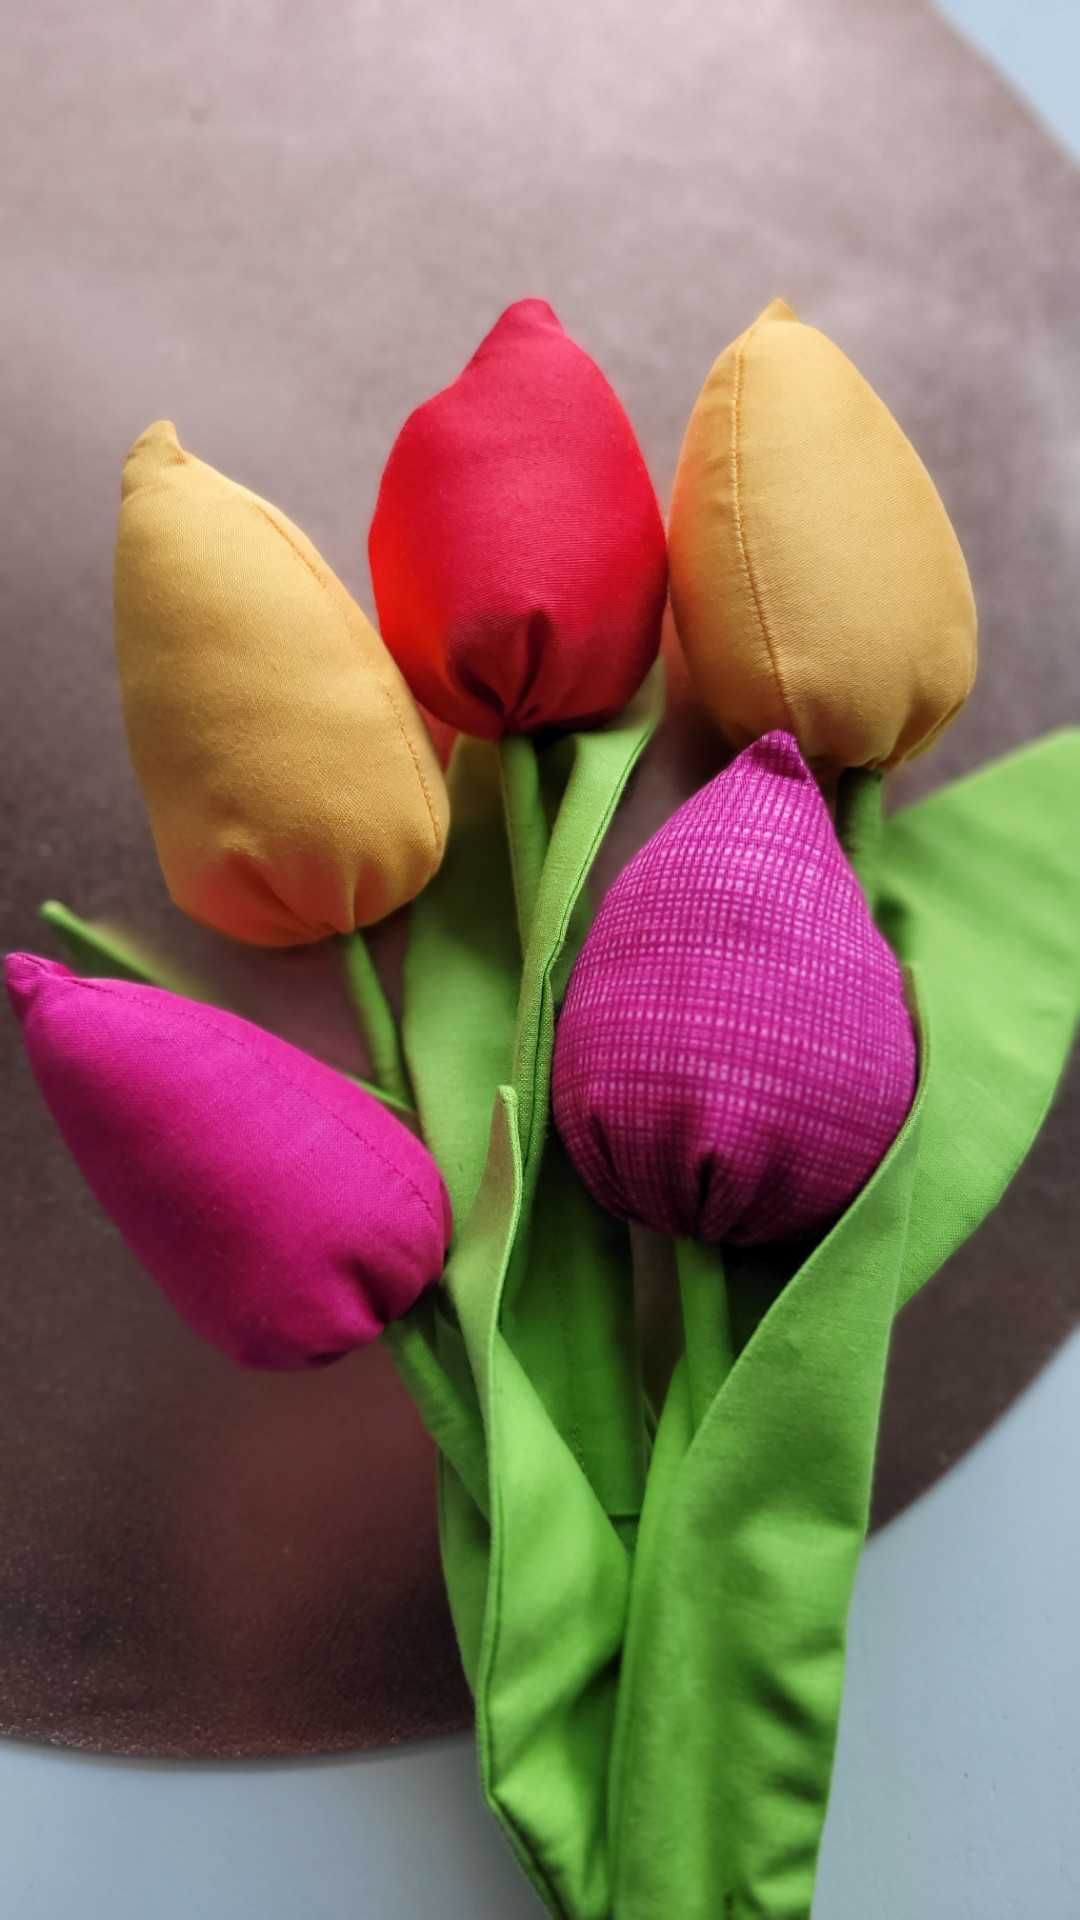 Wielkanocna ozdoba - 5zł za 1 szt. tulipana. Bukiet wiosennych kwiatów